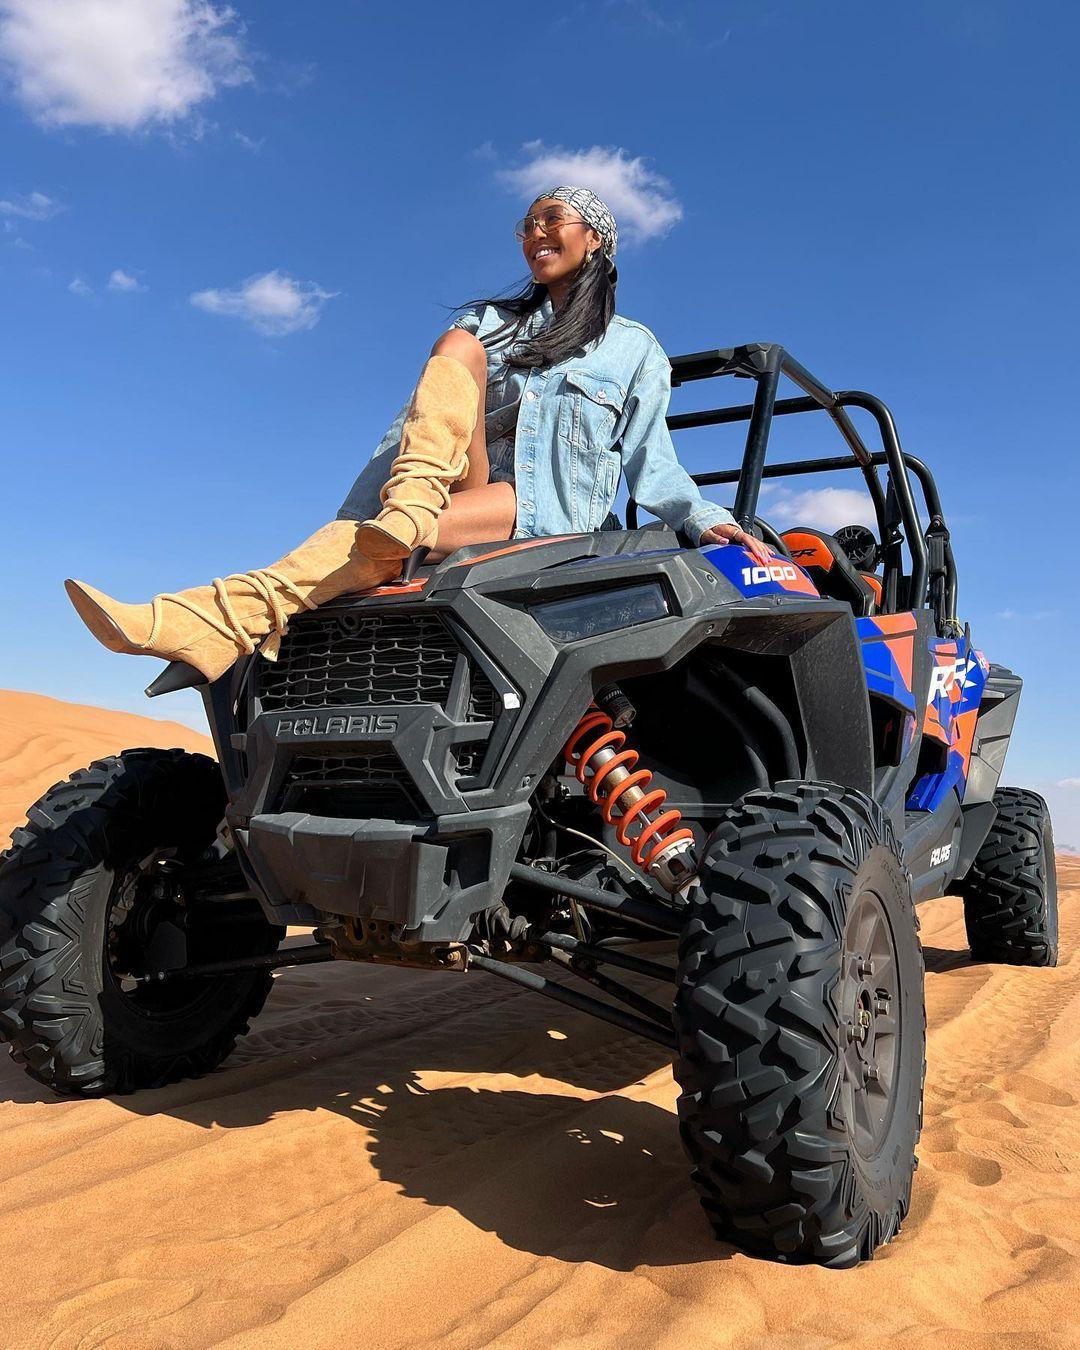 Tayshia Adams rides jeep